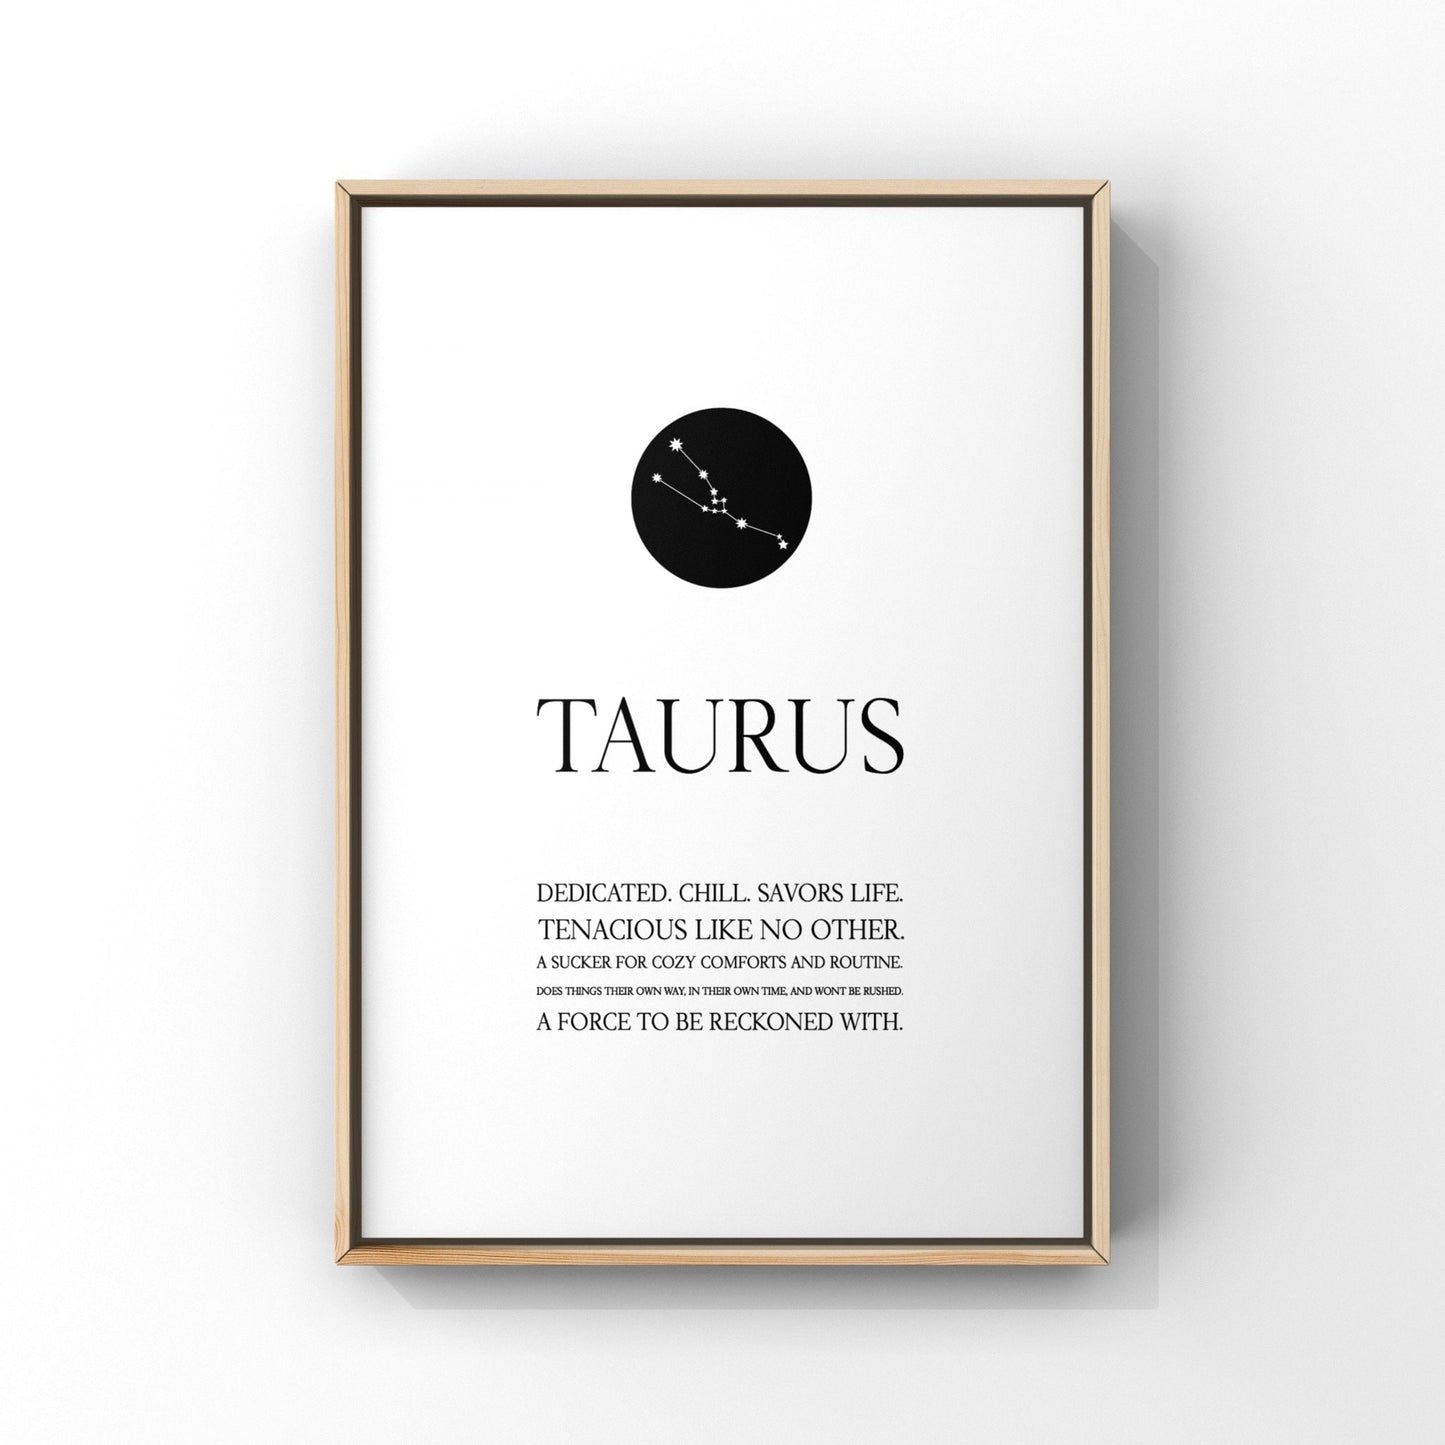 Taurus print,Taurus wall art,Zodiac Taurus print,Taurus constellation,Taurus gift,Zodiac print,Astrology print,Star sign,Zodiac birthday